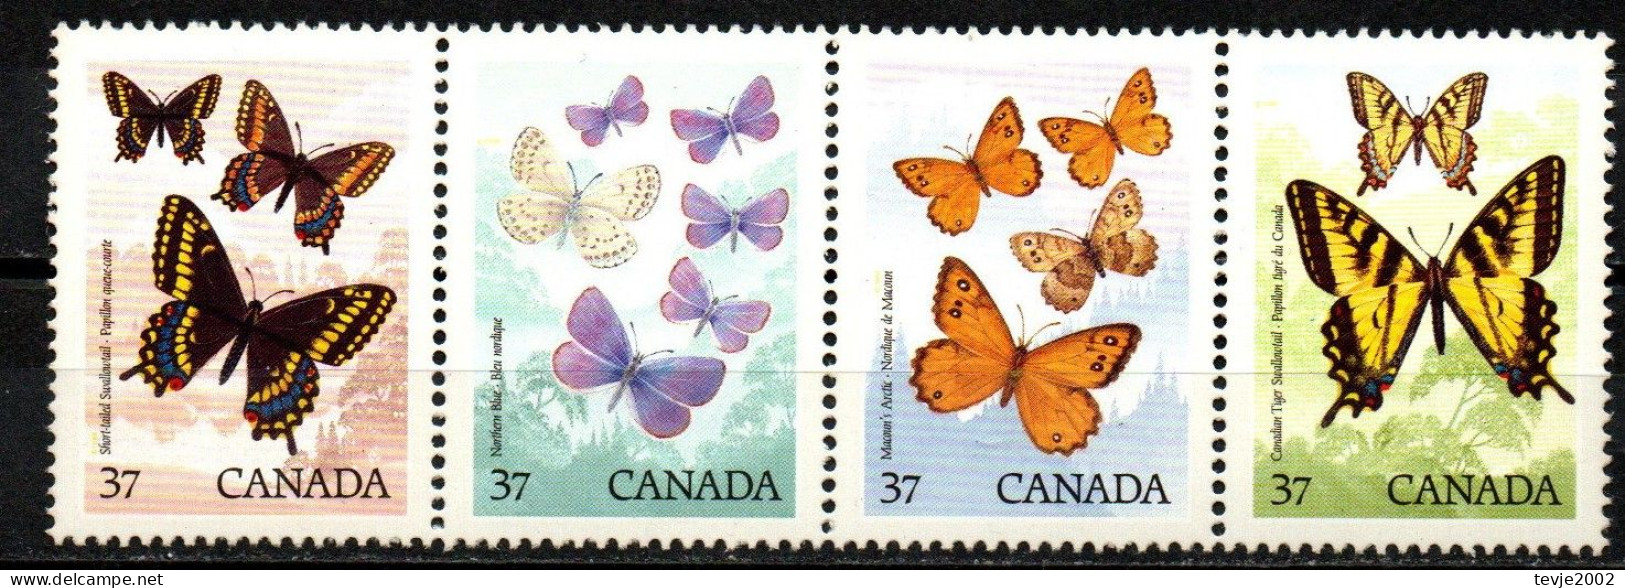 Kanada Canada 1988 - Mi.Nr. 1090 - 1093 - Postfrisch MNH - Tiere Animals Schmetterlinge Butterflies - Vlinders